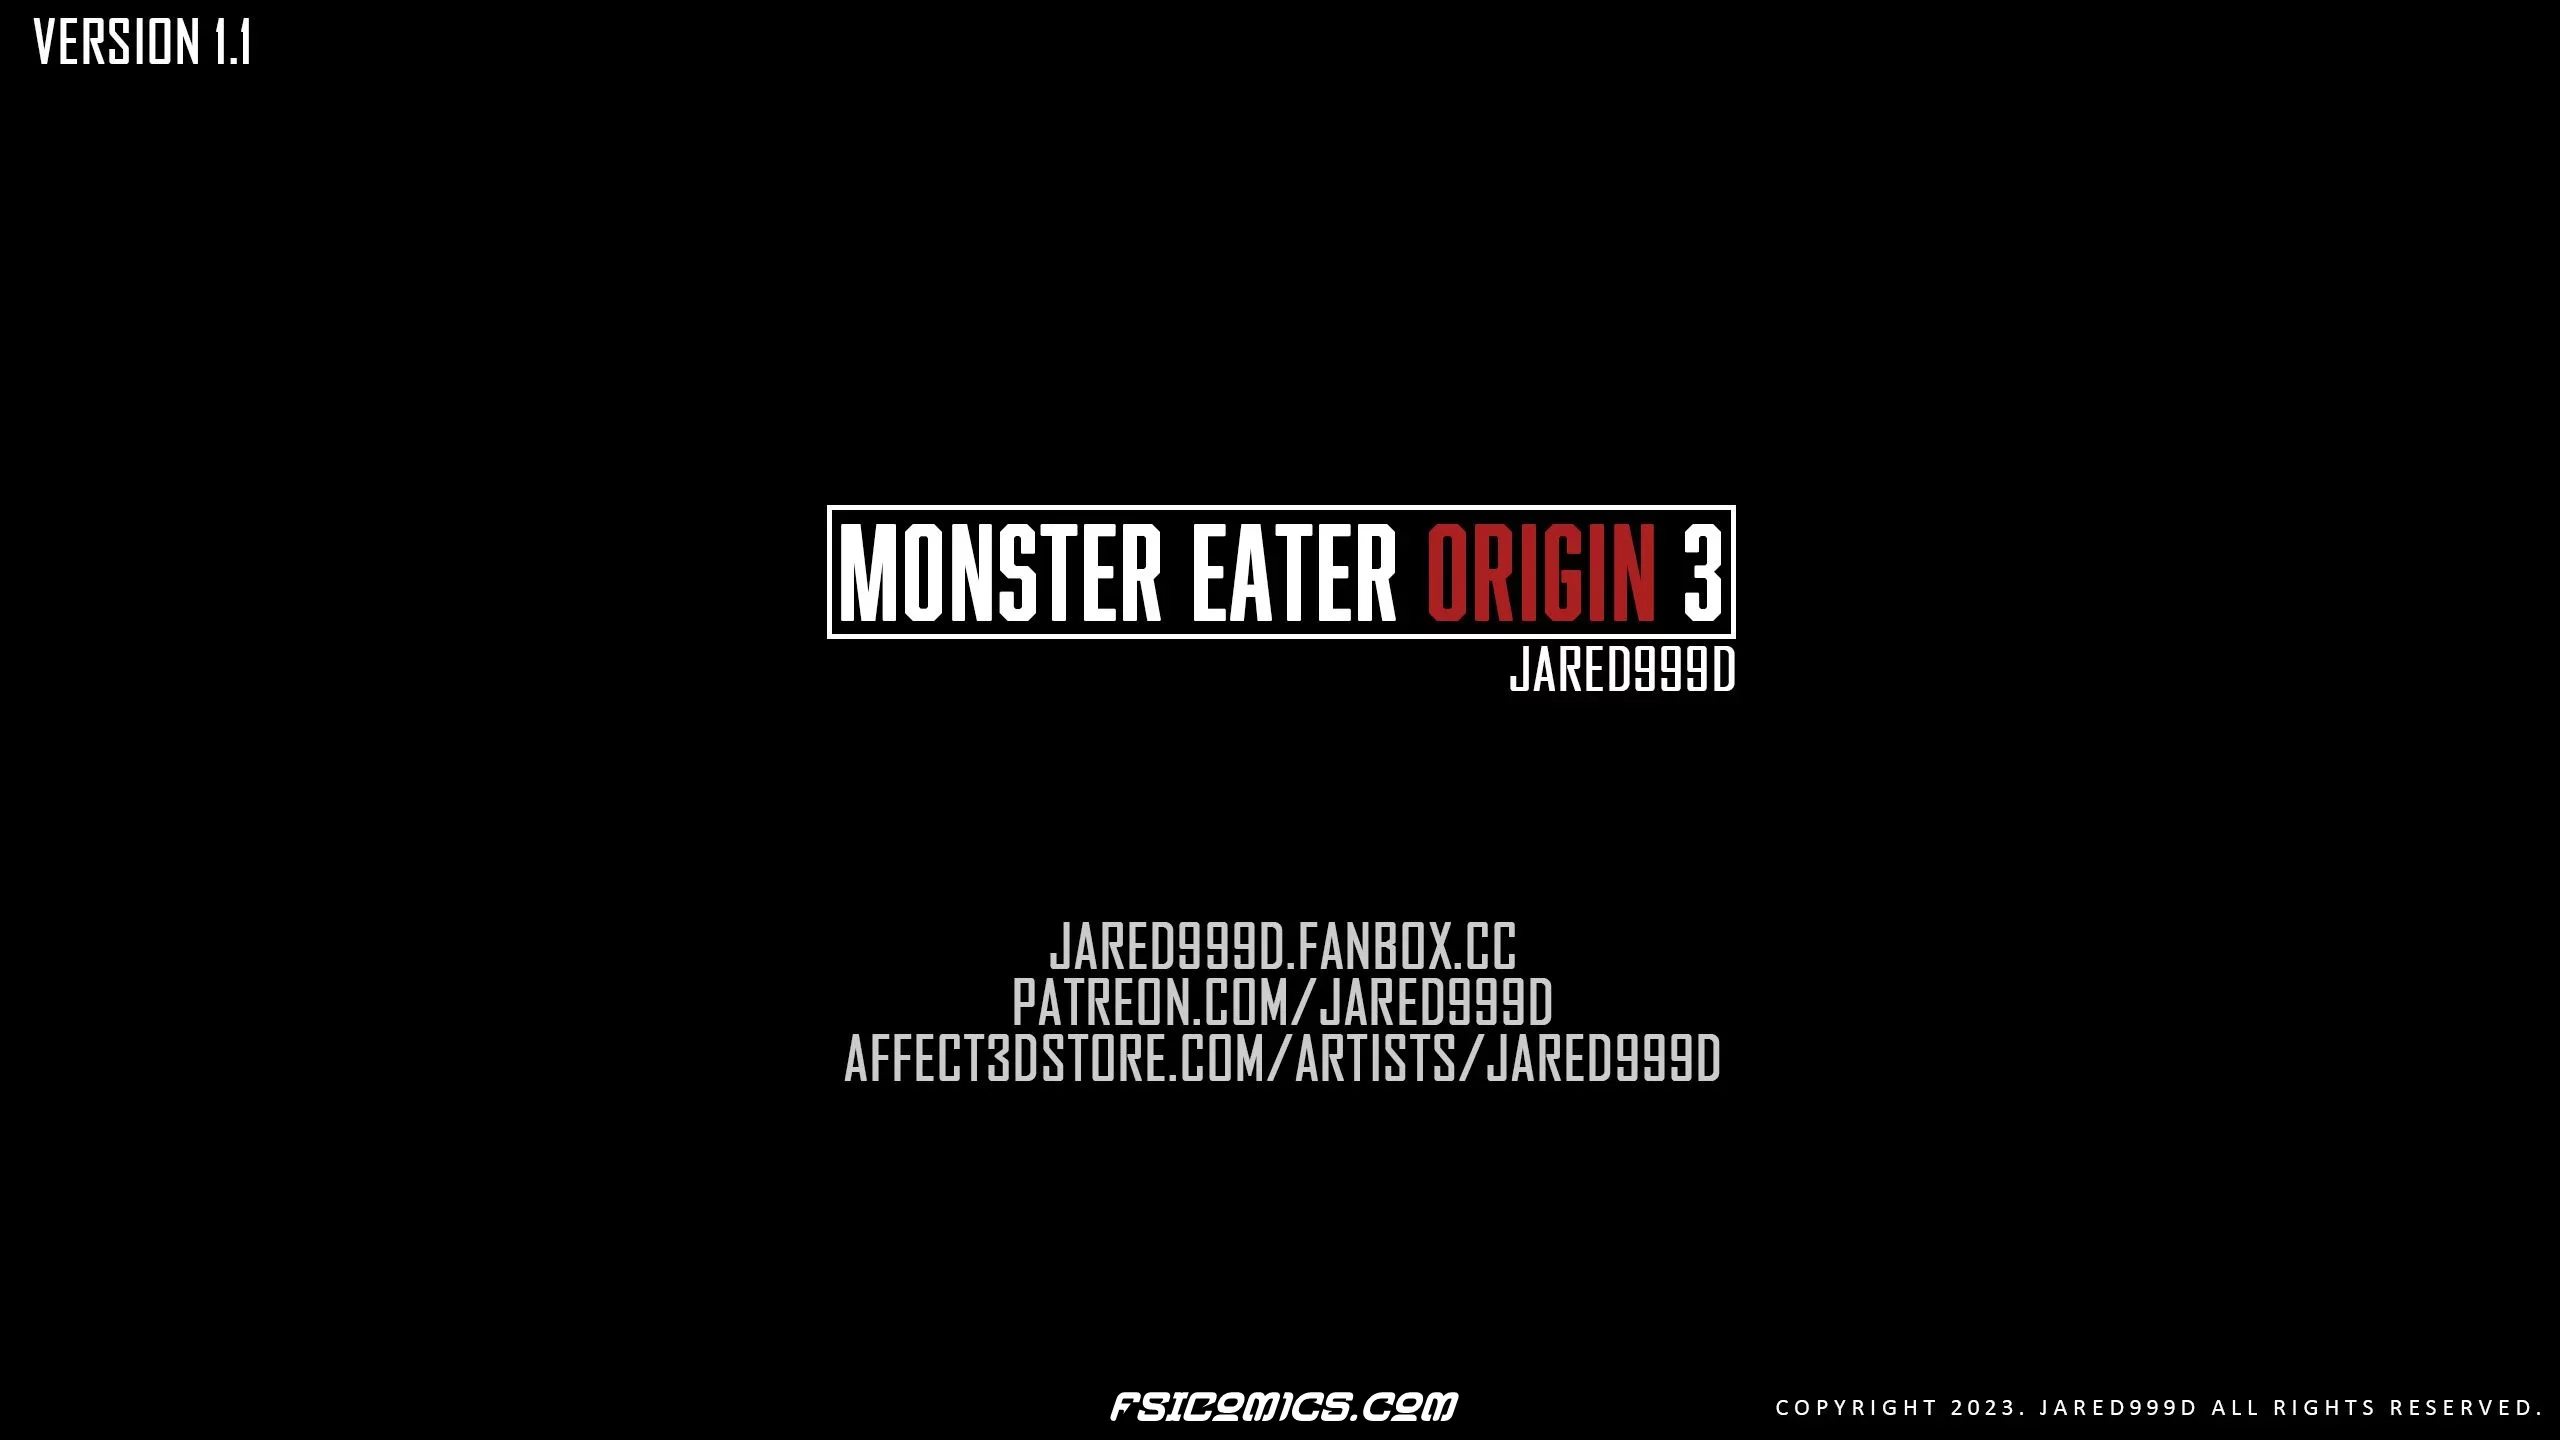 Monster Eater Origins Chapter 3 - Jared999D - 11 - FSIComics